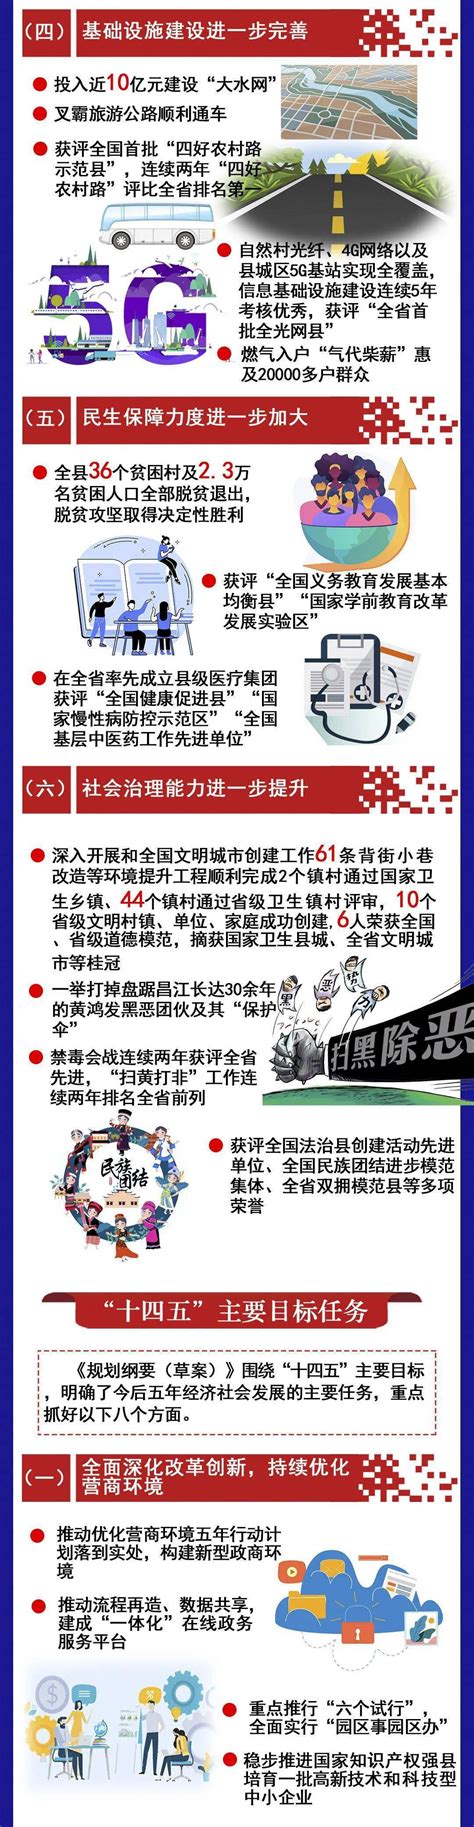 海南昌江：企业积极谋发展助力昌江县经济“稳进提质”-消费日报网